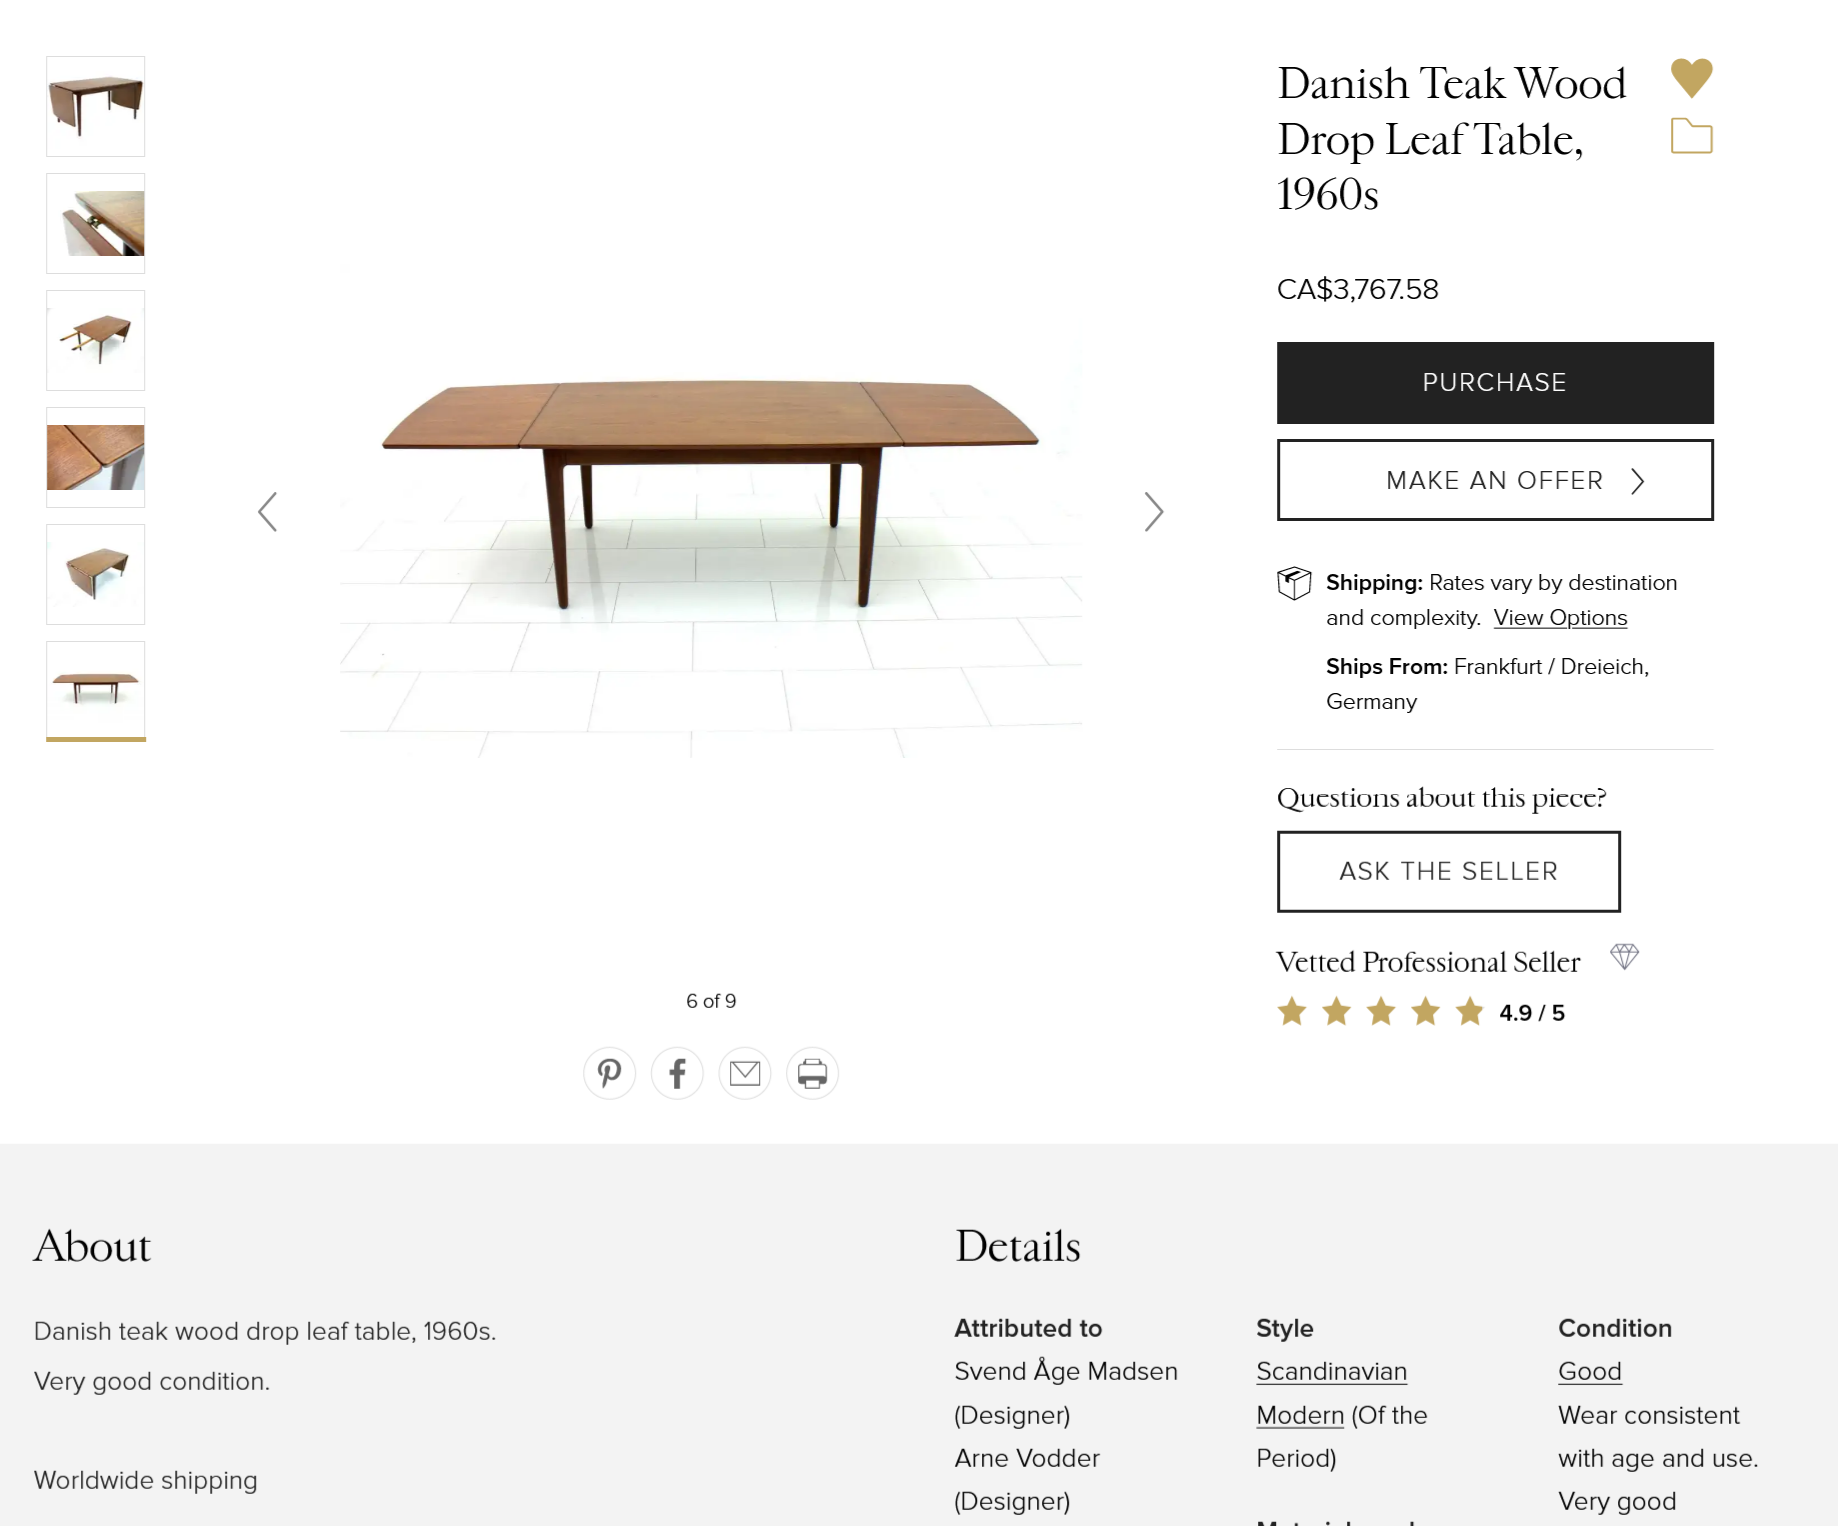 1620003317-Danish-Teak-Wood-Drop-Leaf-Table-1960s-Vamo-Arne-Vodder.png